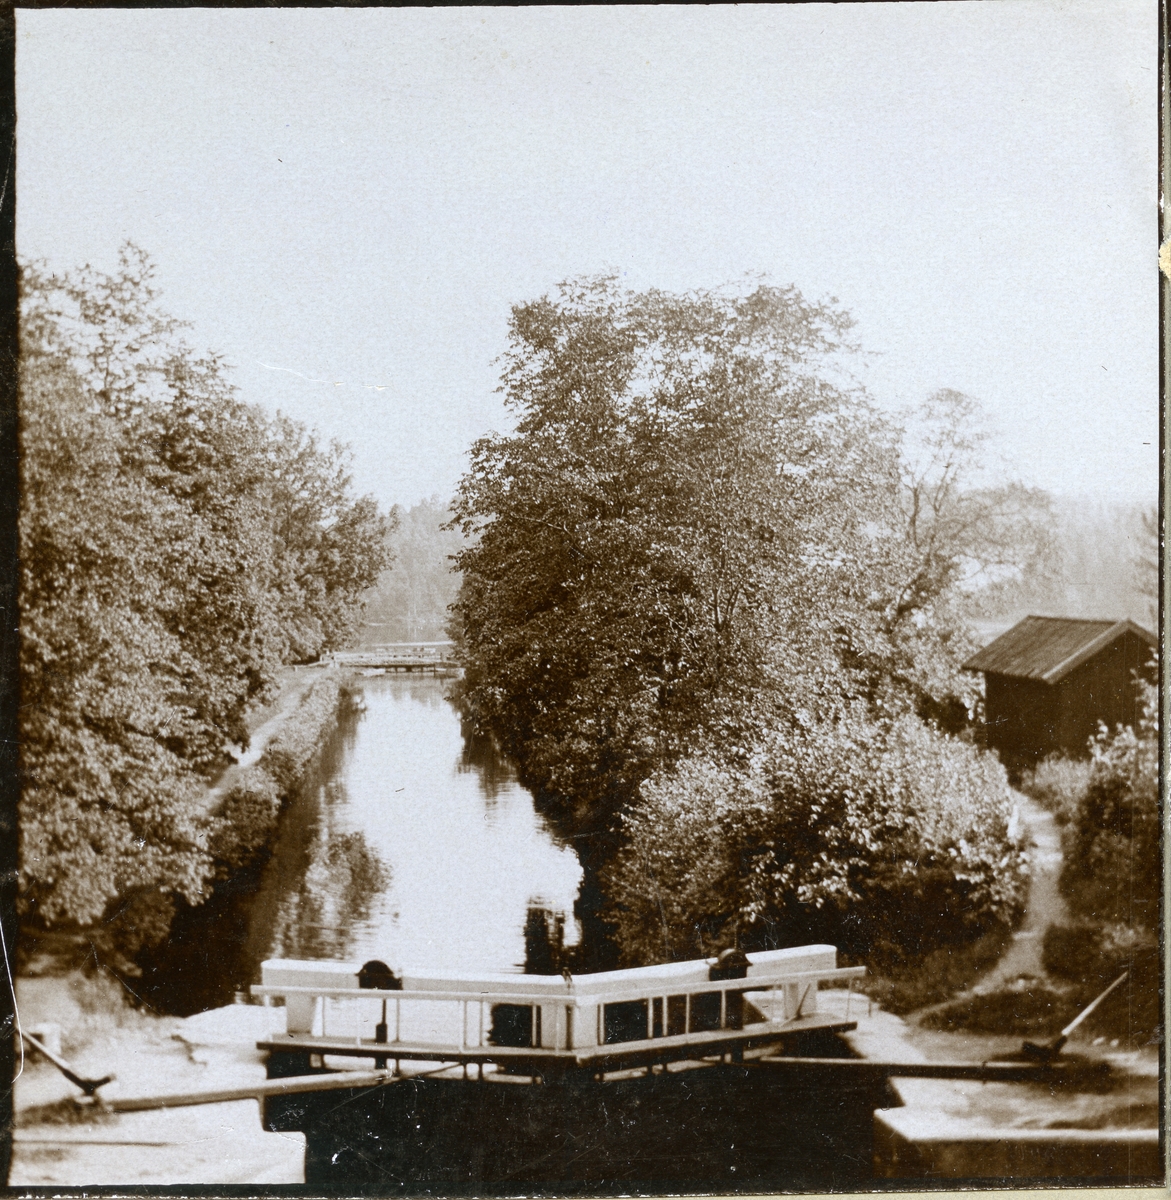 Västanfors sn, Fagersta kn, Strömsholms kanal.
Stereoskopiskt foto (3-D), c:a 1905-1915.